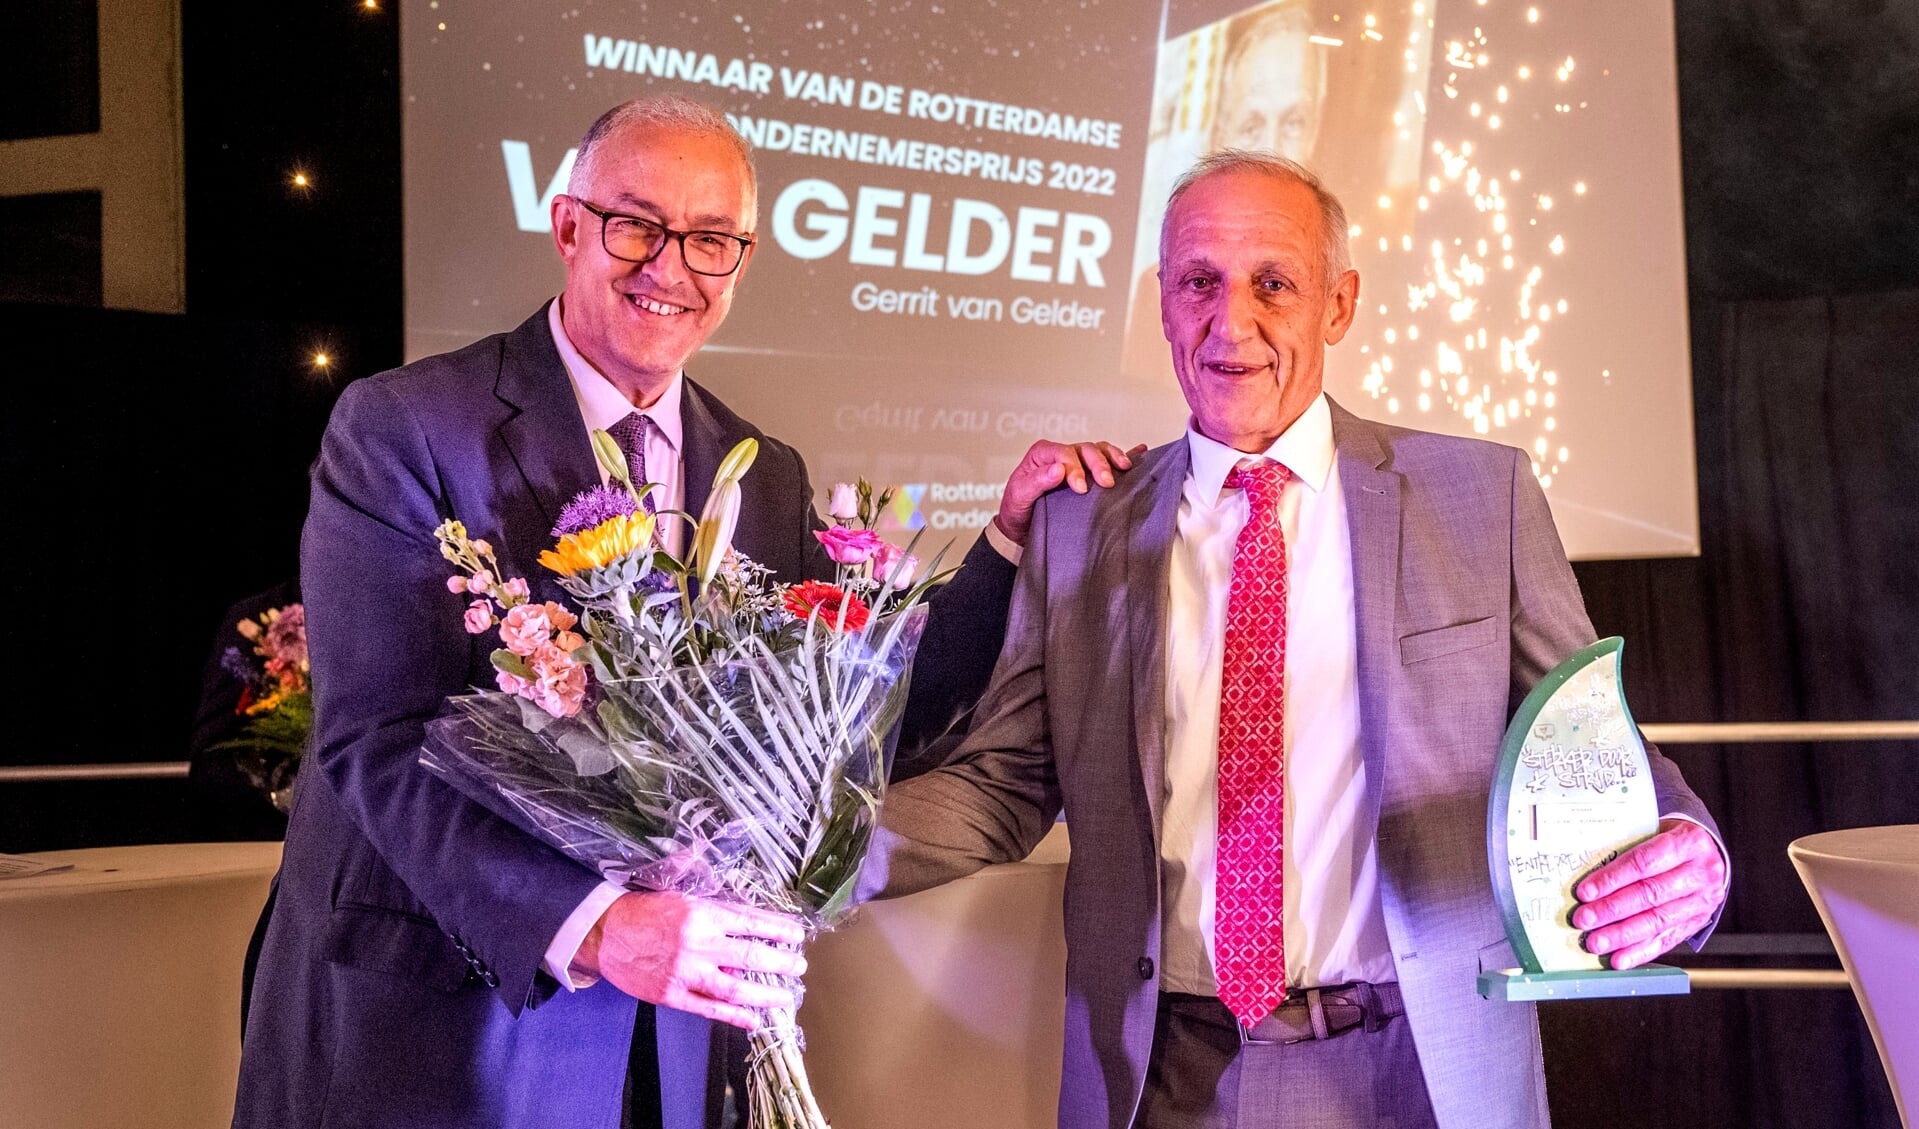 De winnaar van de Rotterdamse Ondernemersprijs Ron van Gelder. (Foto: Frank de Roo)